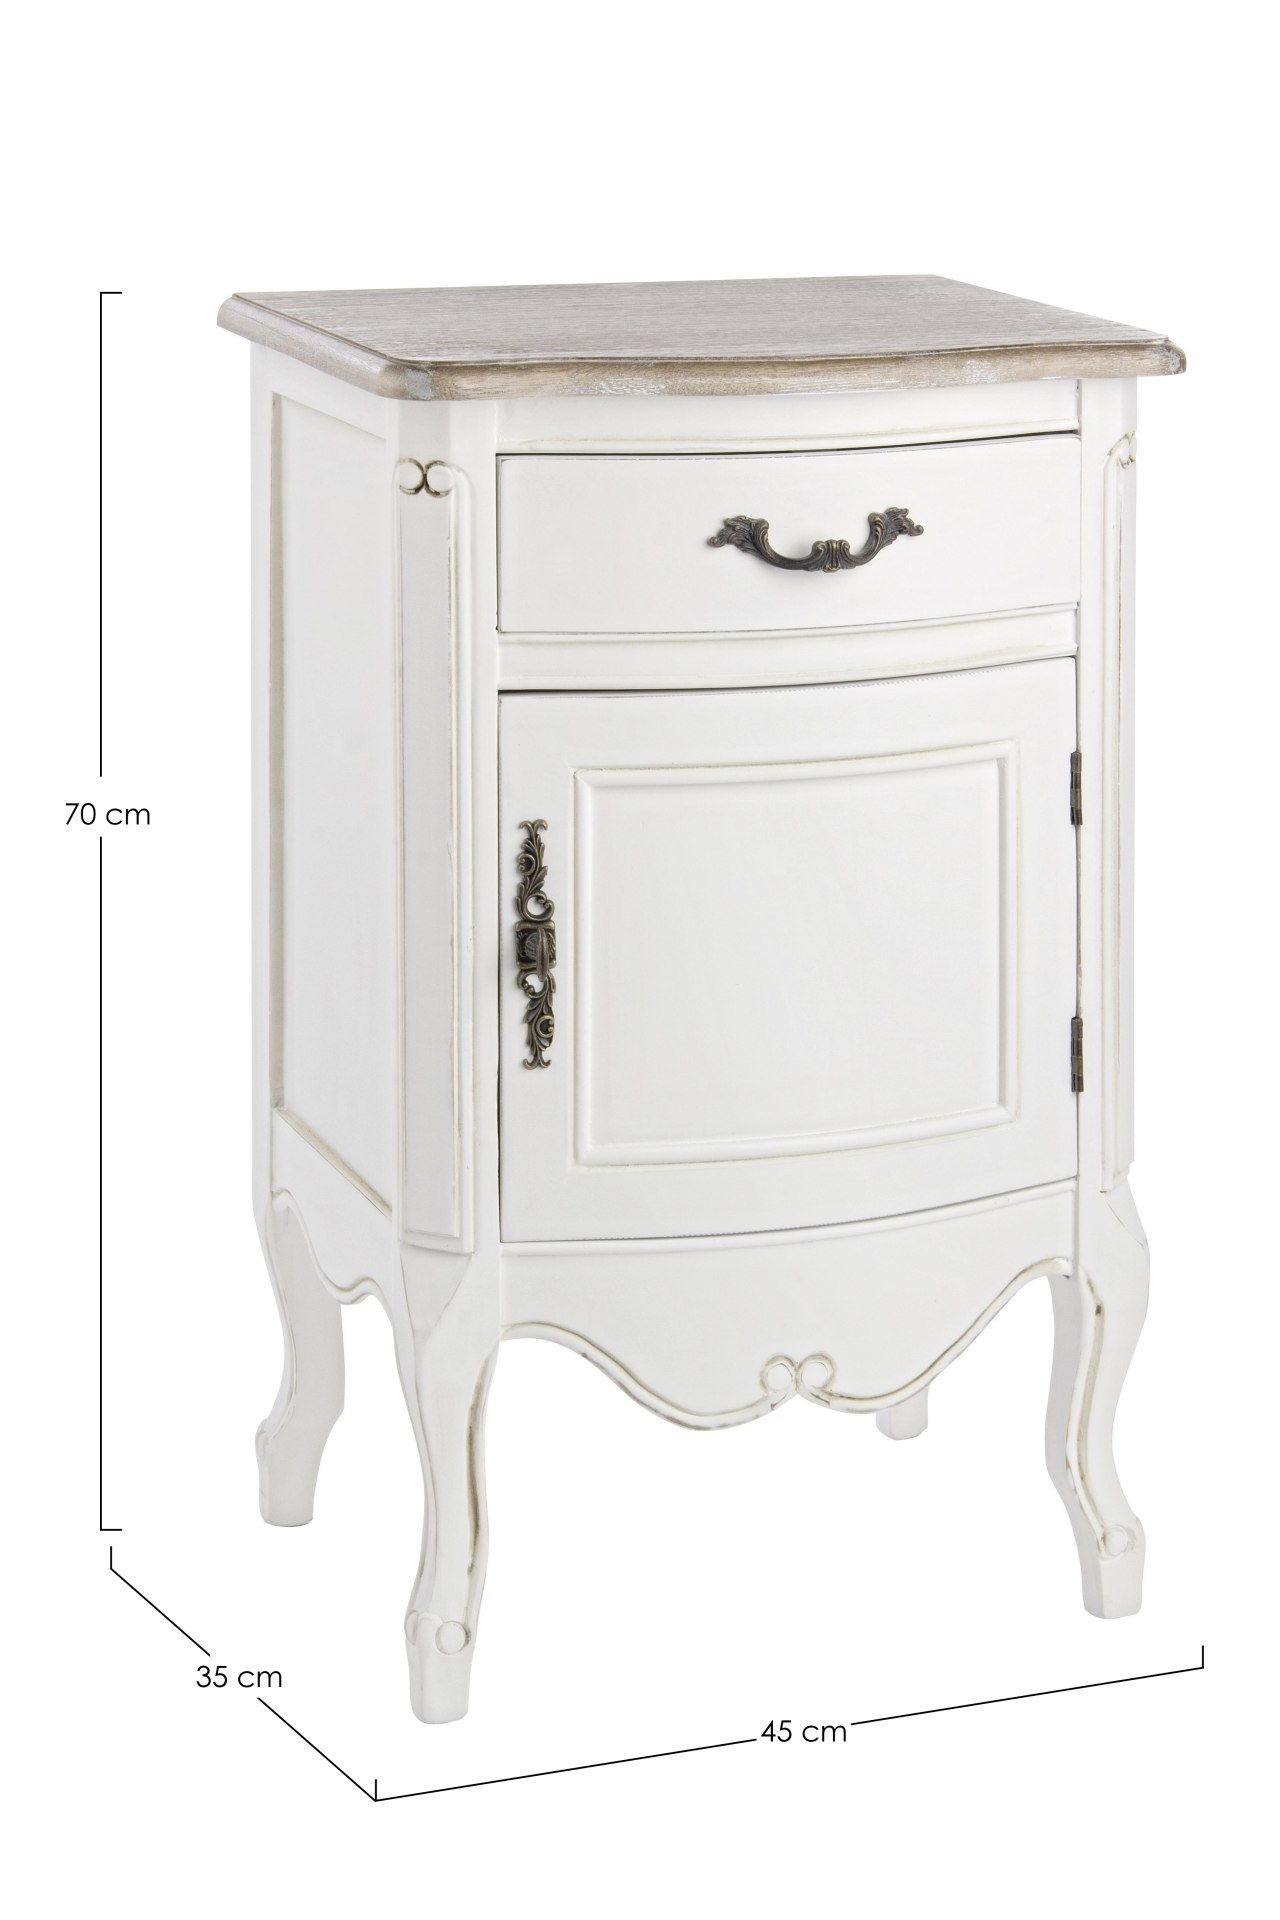 Der Nachttisch Justine überzeugt mit seinem klassischen Design. Gefertigt wurde er aus Paulowniaholz, welches einen weißen Farbton besitzt. Das Gestell ist auch aus Paulowniaholz. Der Nachttisch verfügt über eine Schublade und eine Tür. Die Breite beträgt